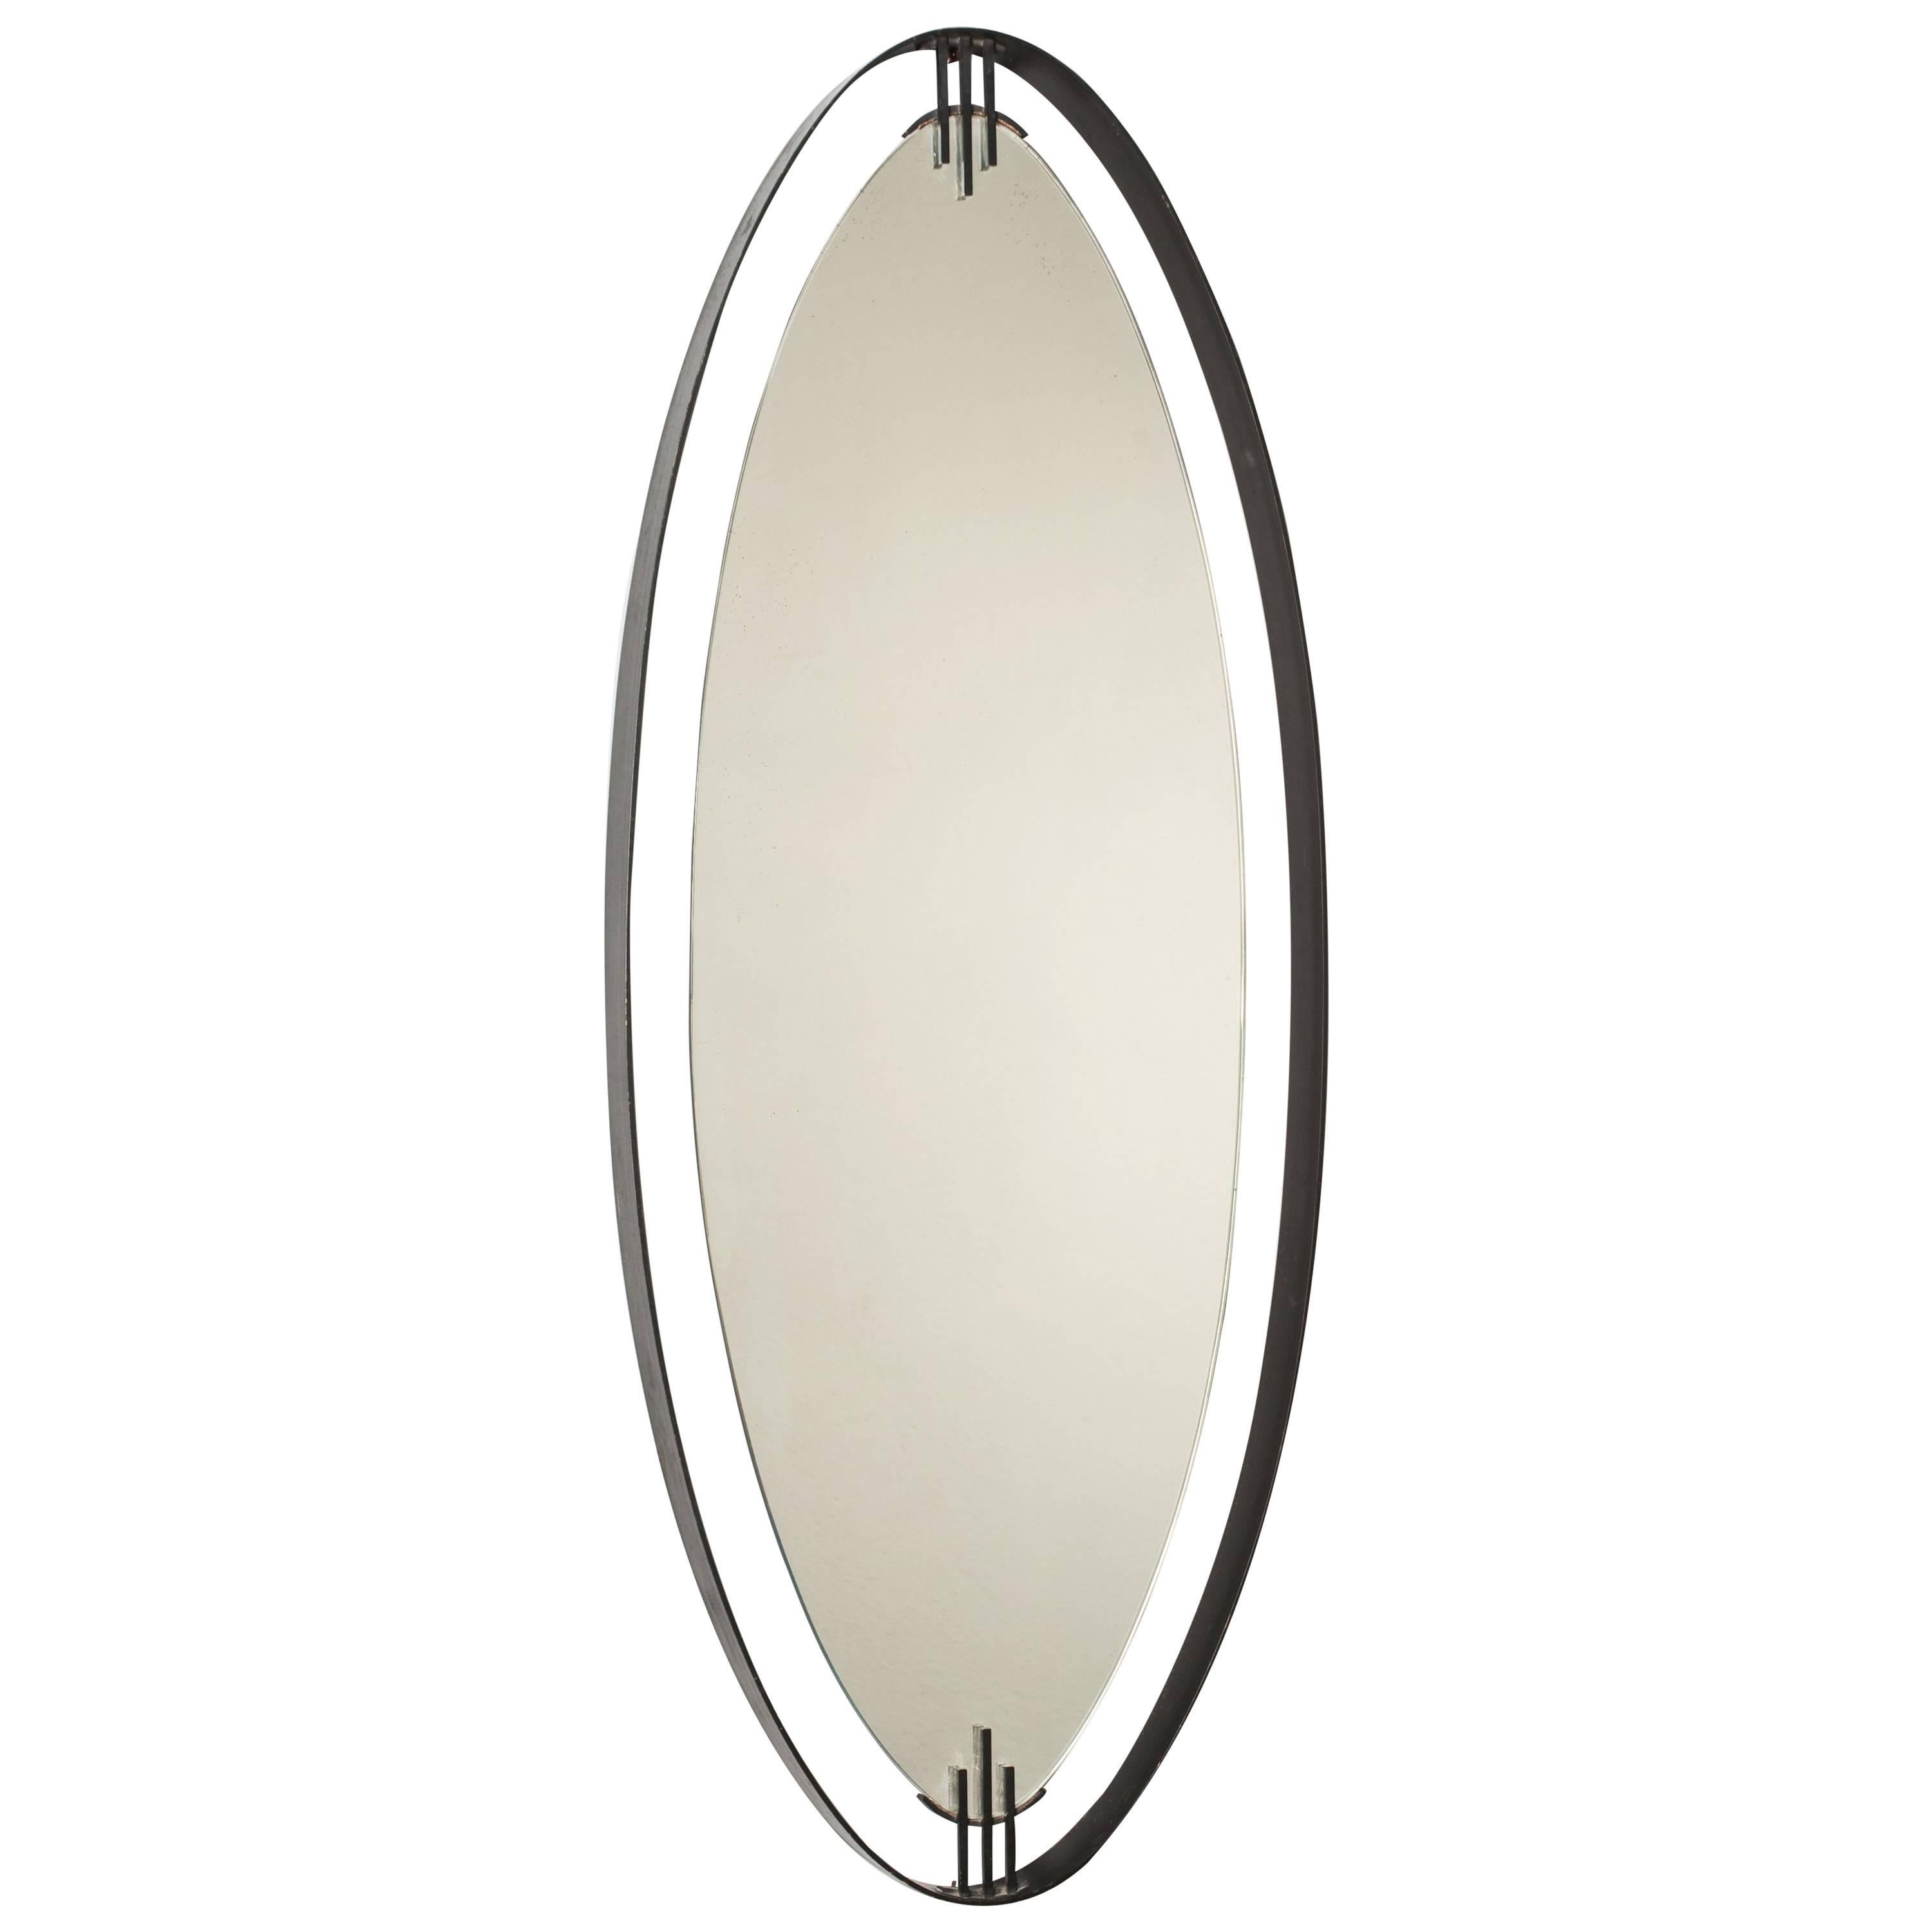 Stunning Oval Mirror by Santambrogio & De Berti